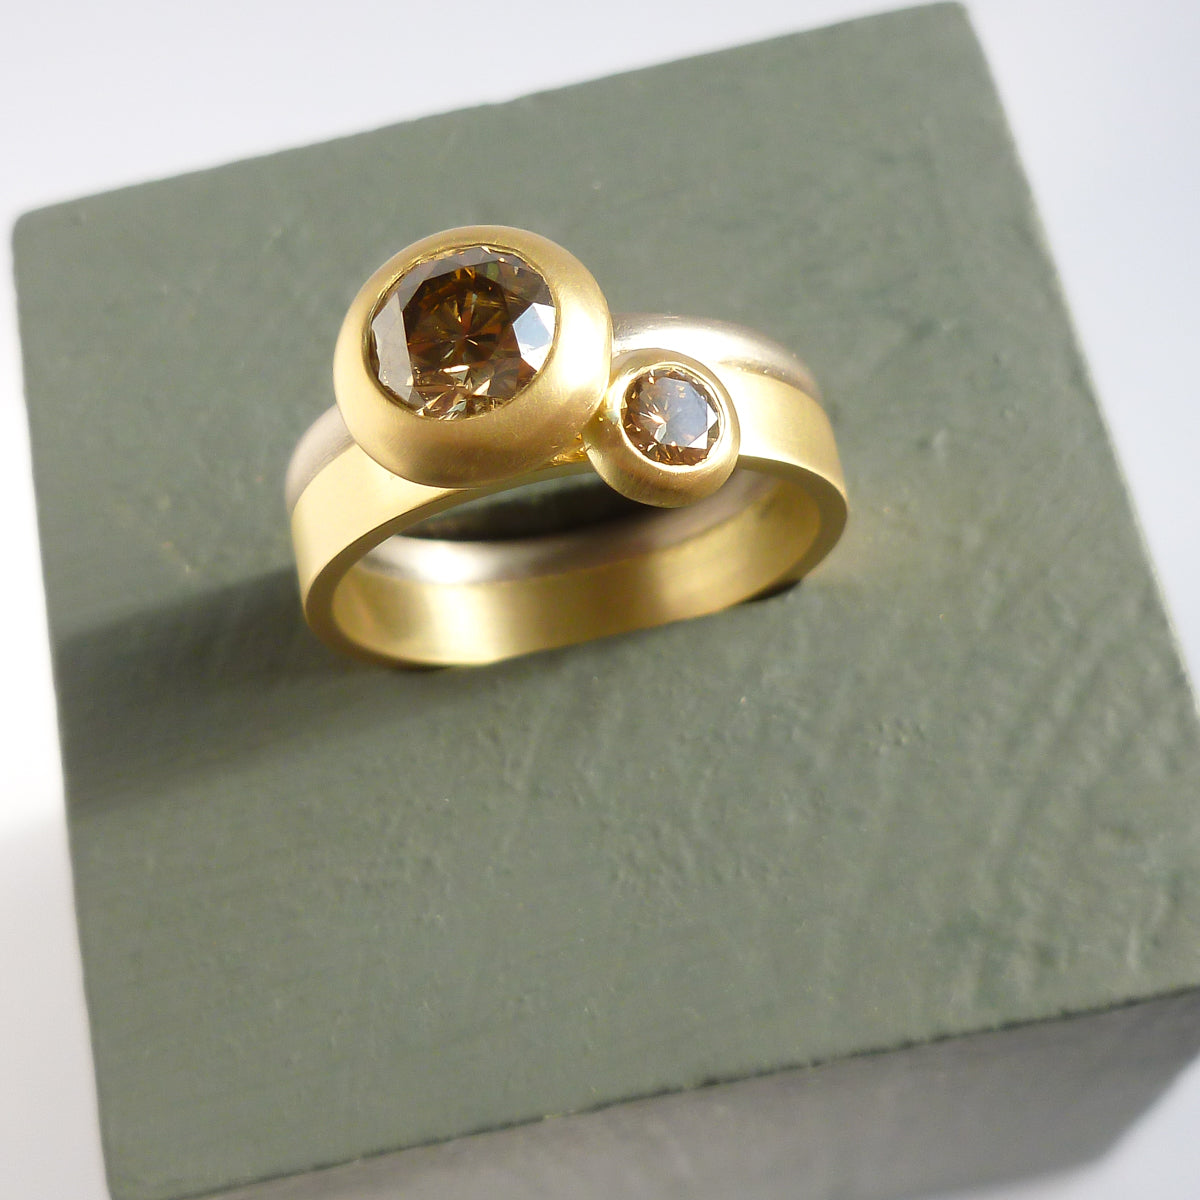 Stunning champagne diamond engagement 18ct yellow gold ring handmade bespoke and modern